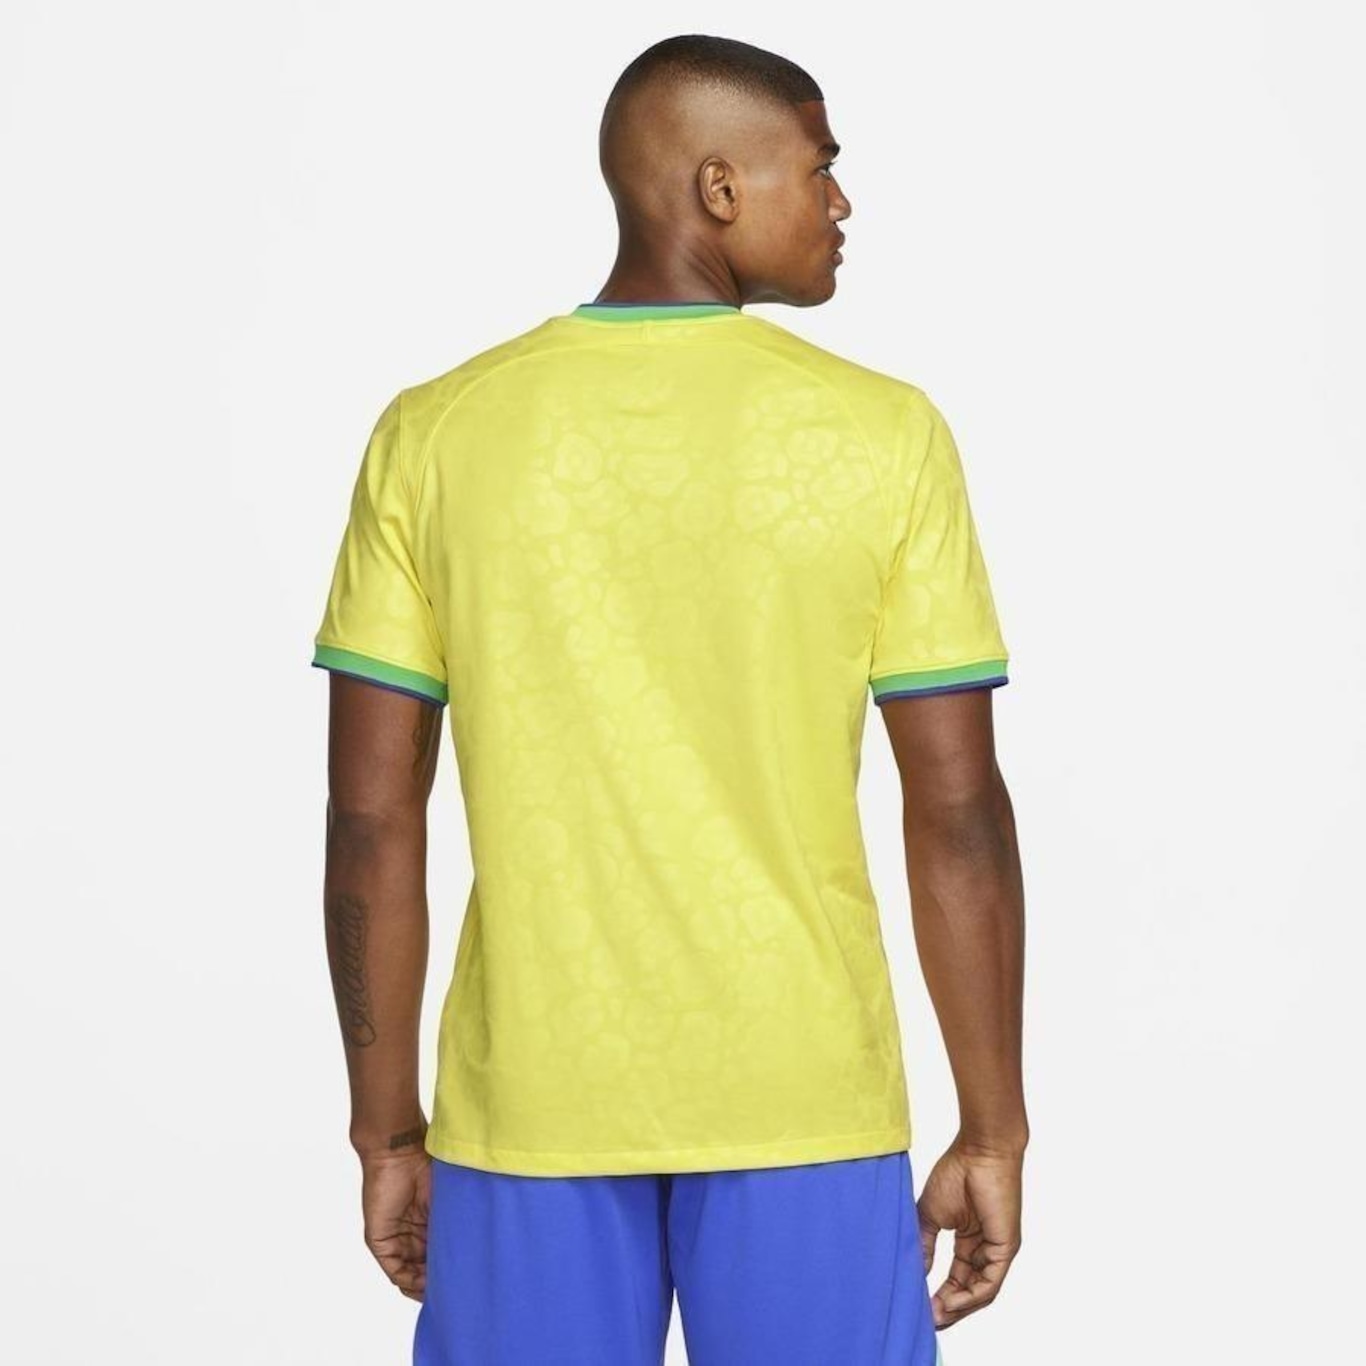 Camisa Nike Brasil 21/22 Treino Masculino - BF Store PR